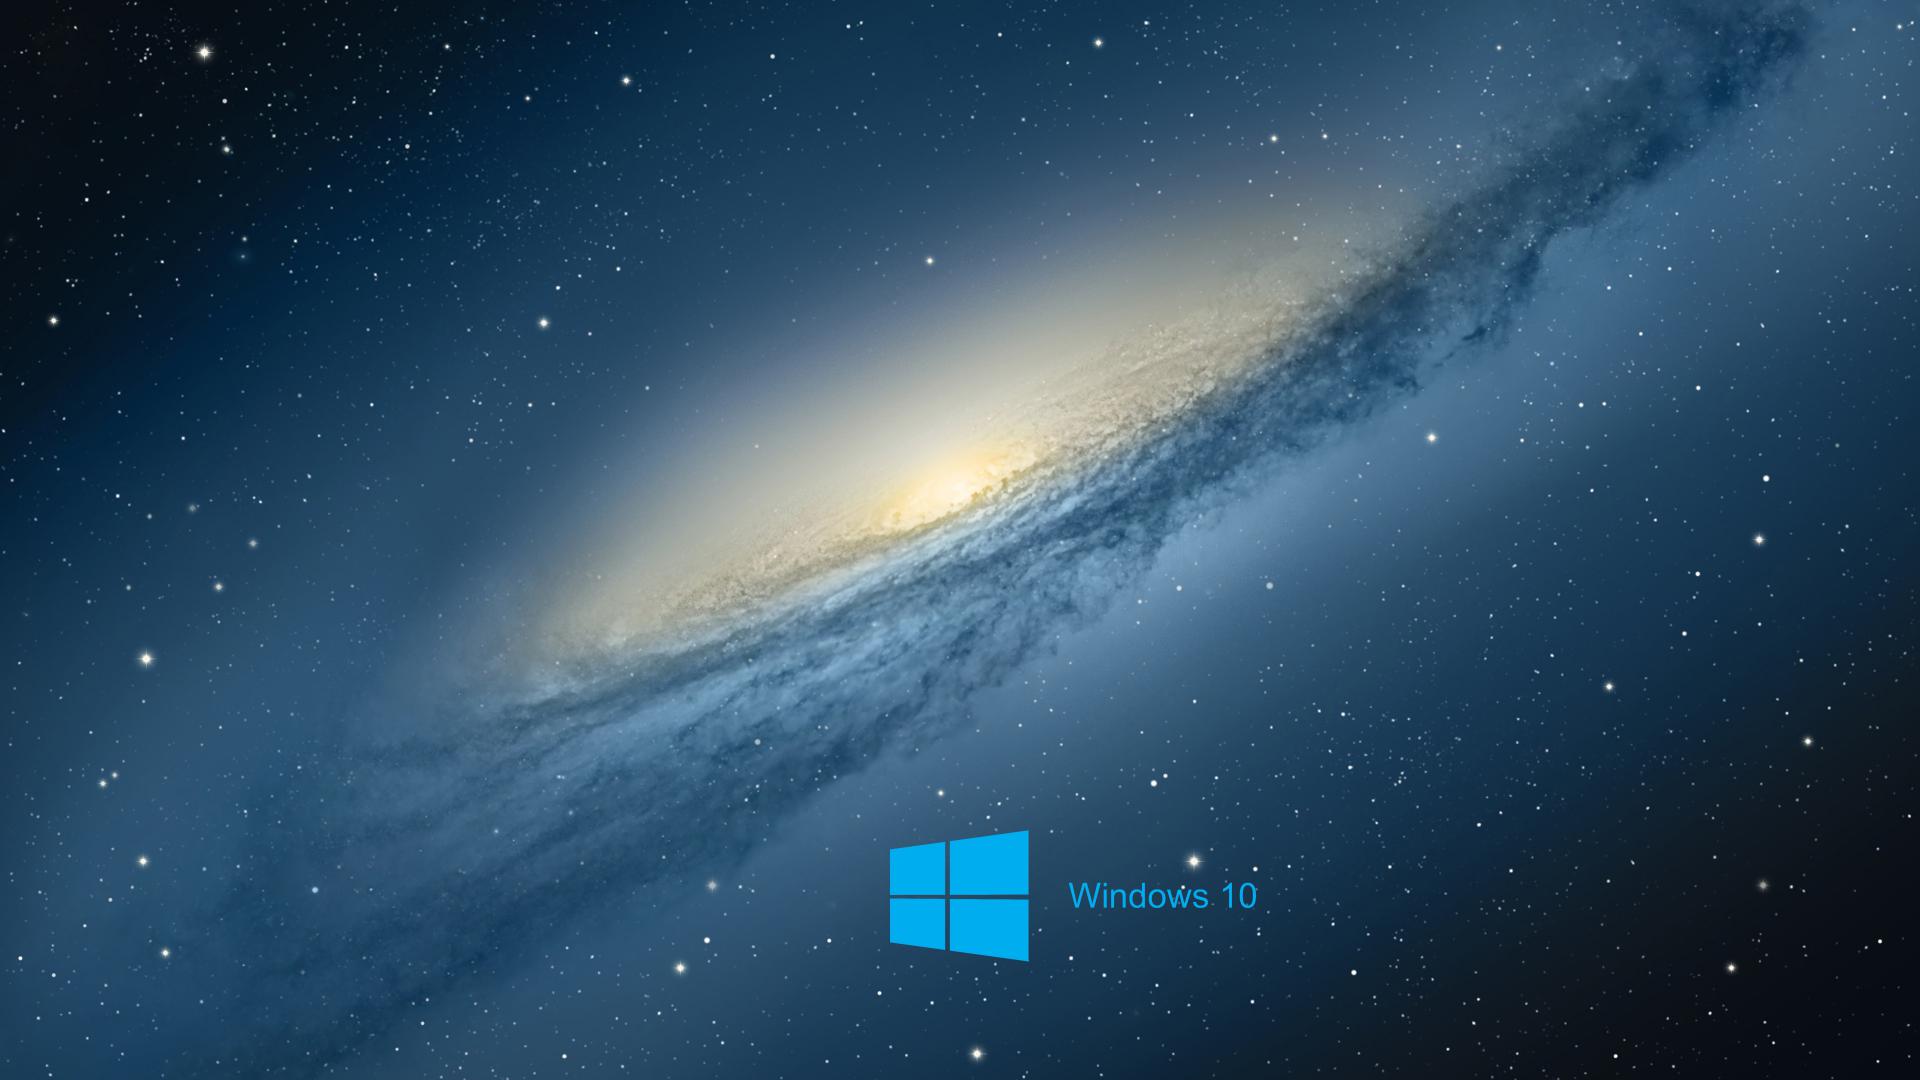 Bạn muốn tìm một hình nền đáp ứng được khát khao khám phá không gian của mình? Hãy đến với loạt hình nền vũ trụ Windows 10 này. Với màu sắc ánh sao tuyệt đẹp cùng thiết kế tinh tế, đây chắc chắn sẽ khiến bạn trầm trồ và sẵn sàng khám phá các chi tiết.